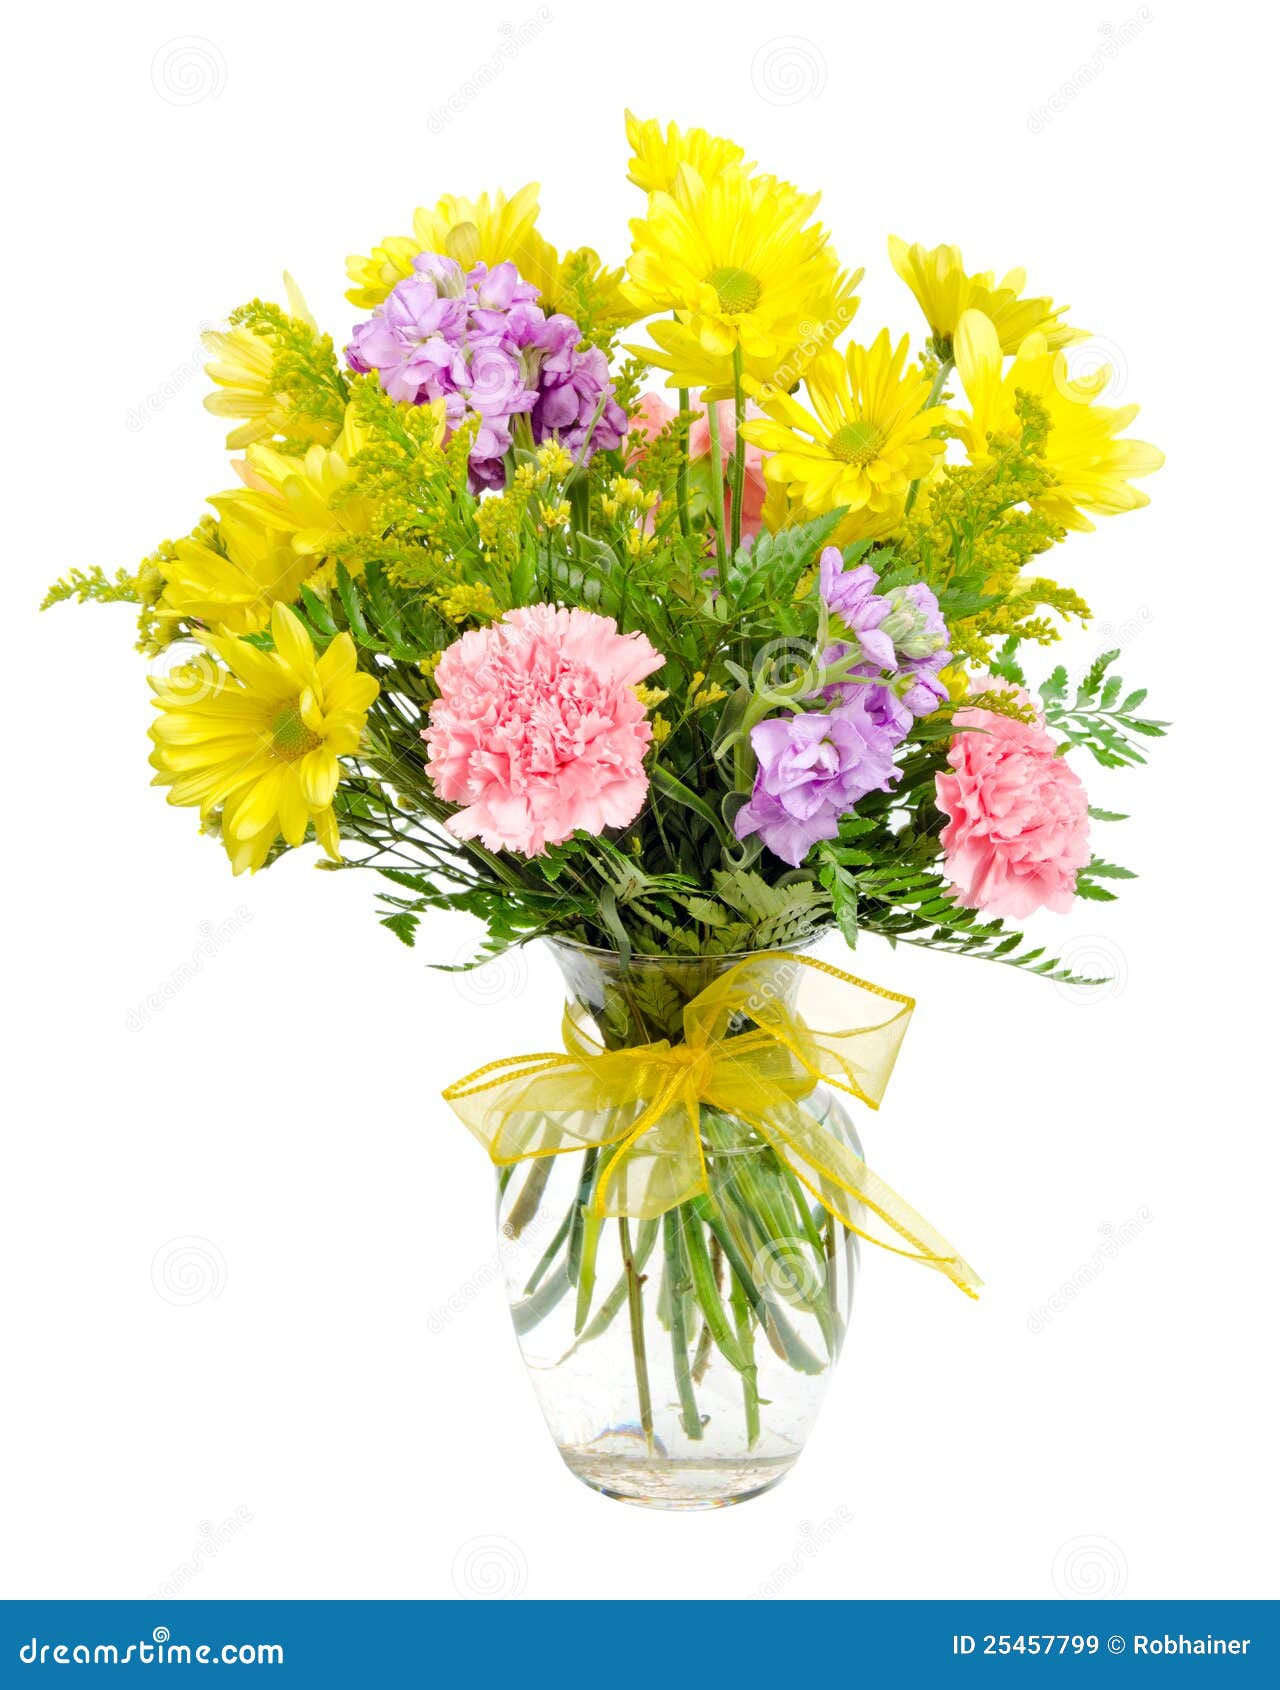 colorful flower arrangement centerpiece